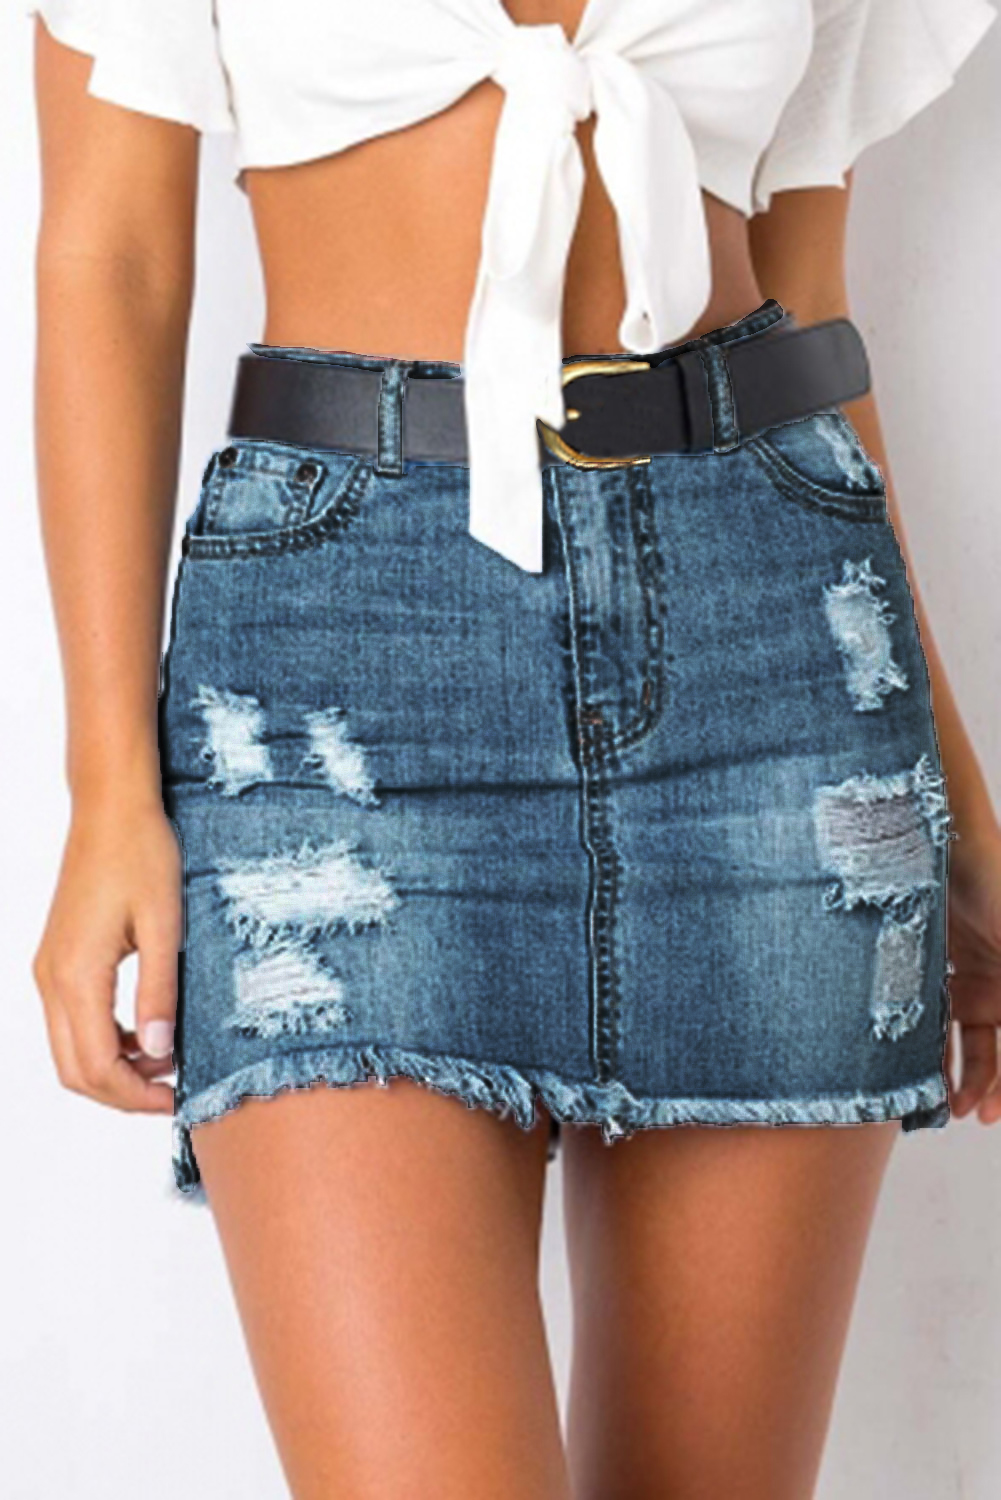 Shop Latest Full Denim Skirts Online | Clove Jeans Skirts UK